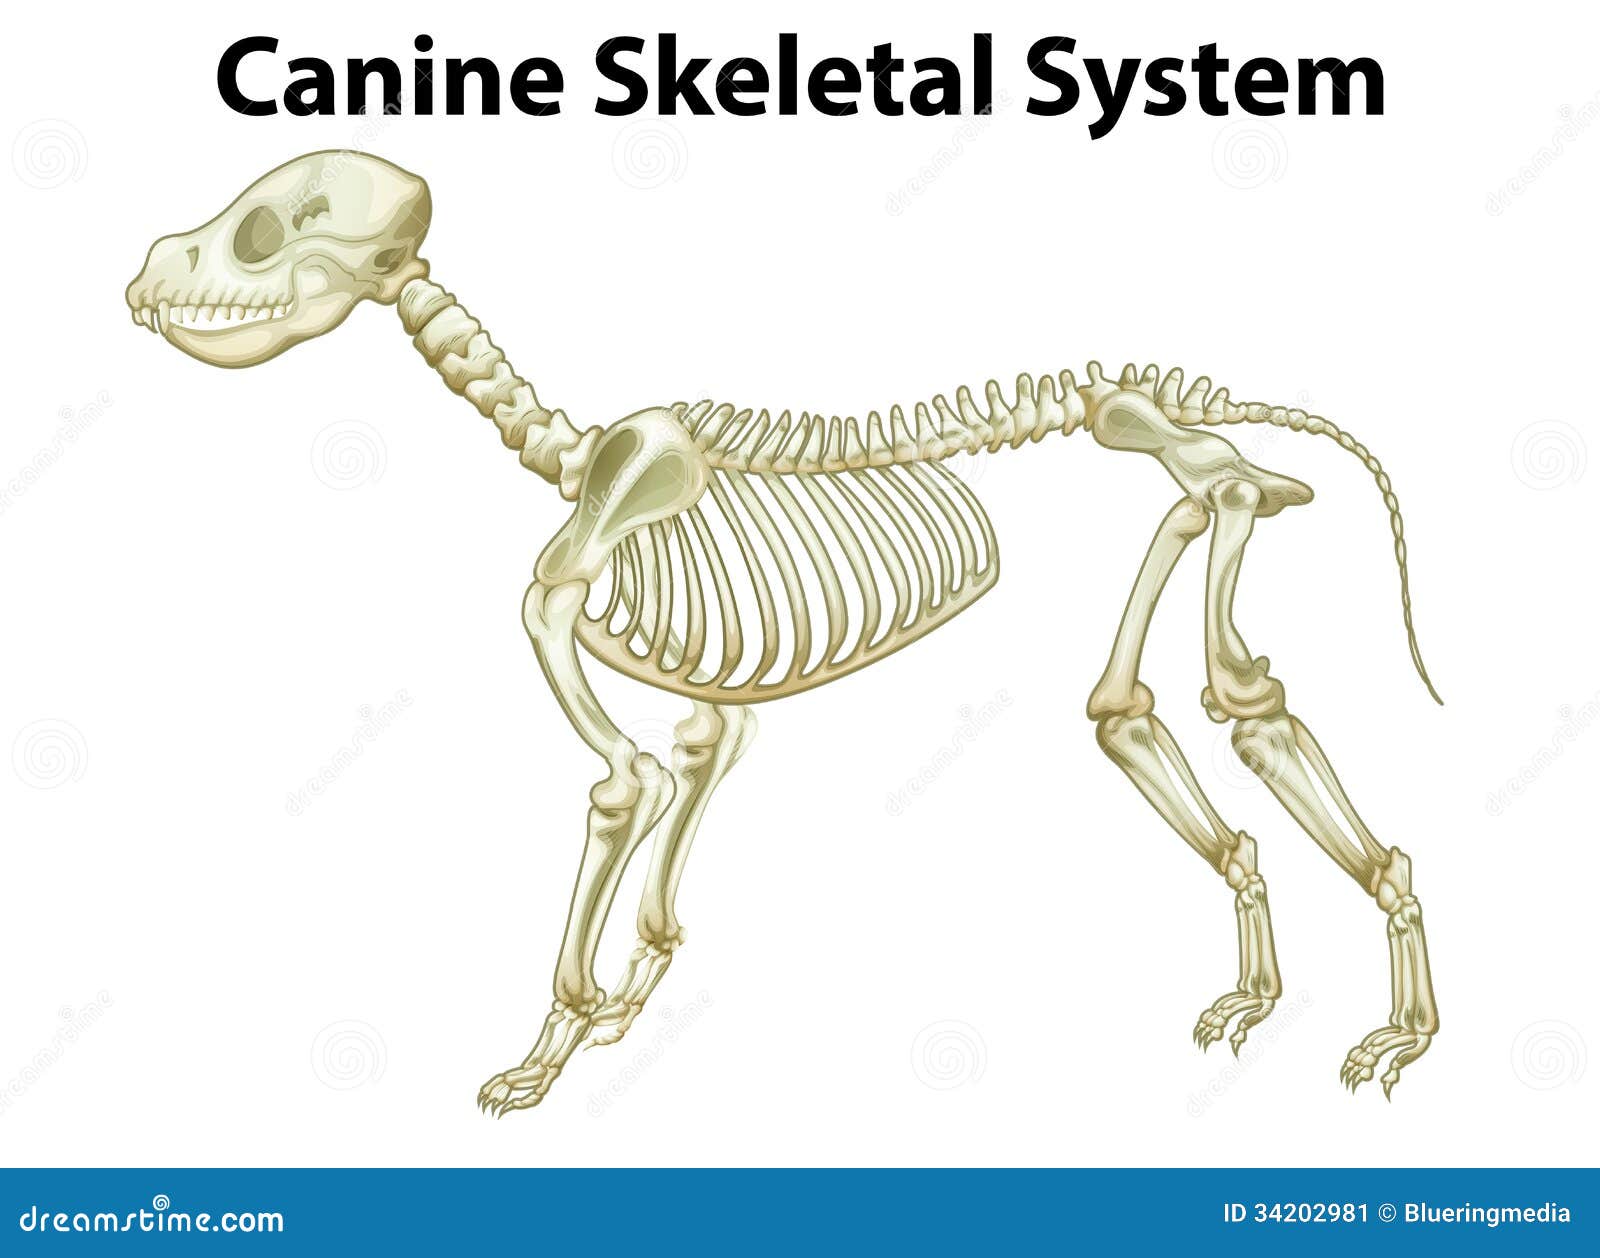 Skeletal system of a dog stock illustration. Illustration ...